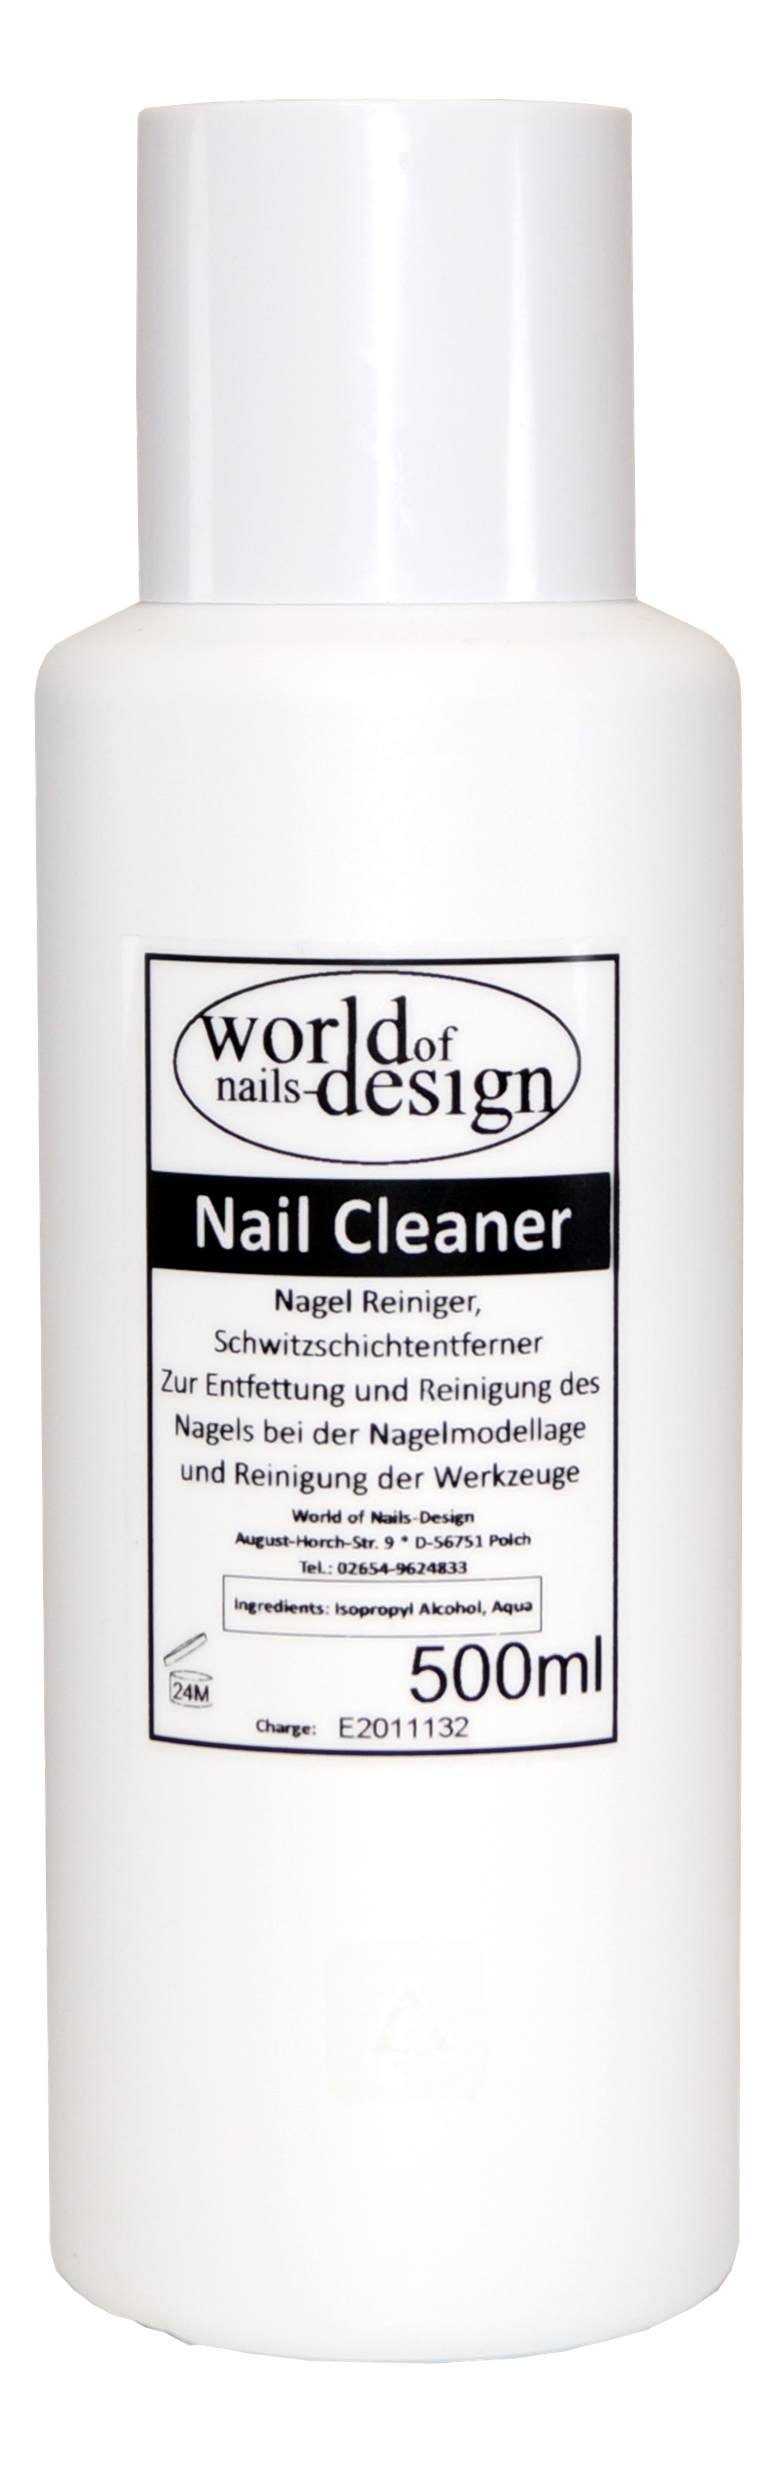 World of Nails-Design Cleaner Nagelreiniger 500ml Cleaner Gelnägel Nagellackentferner Für Nail